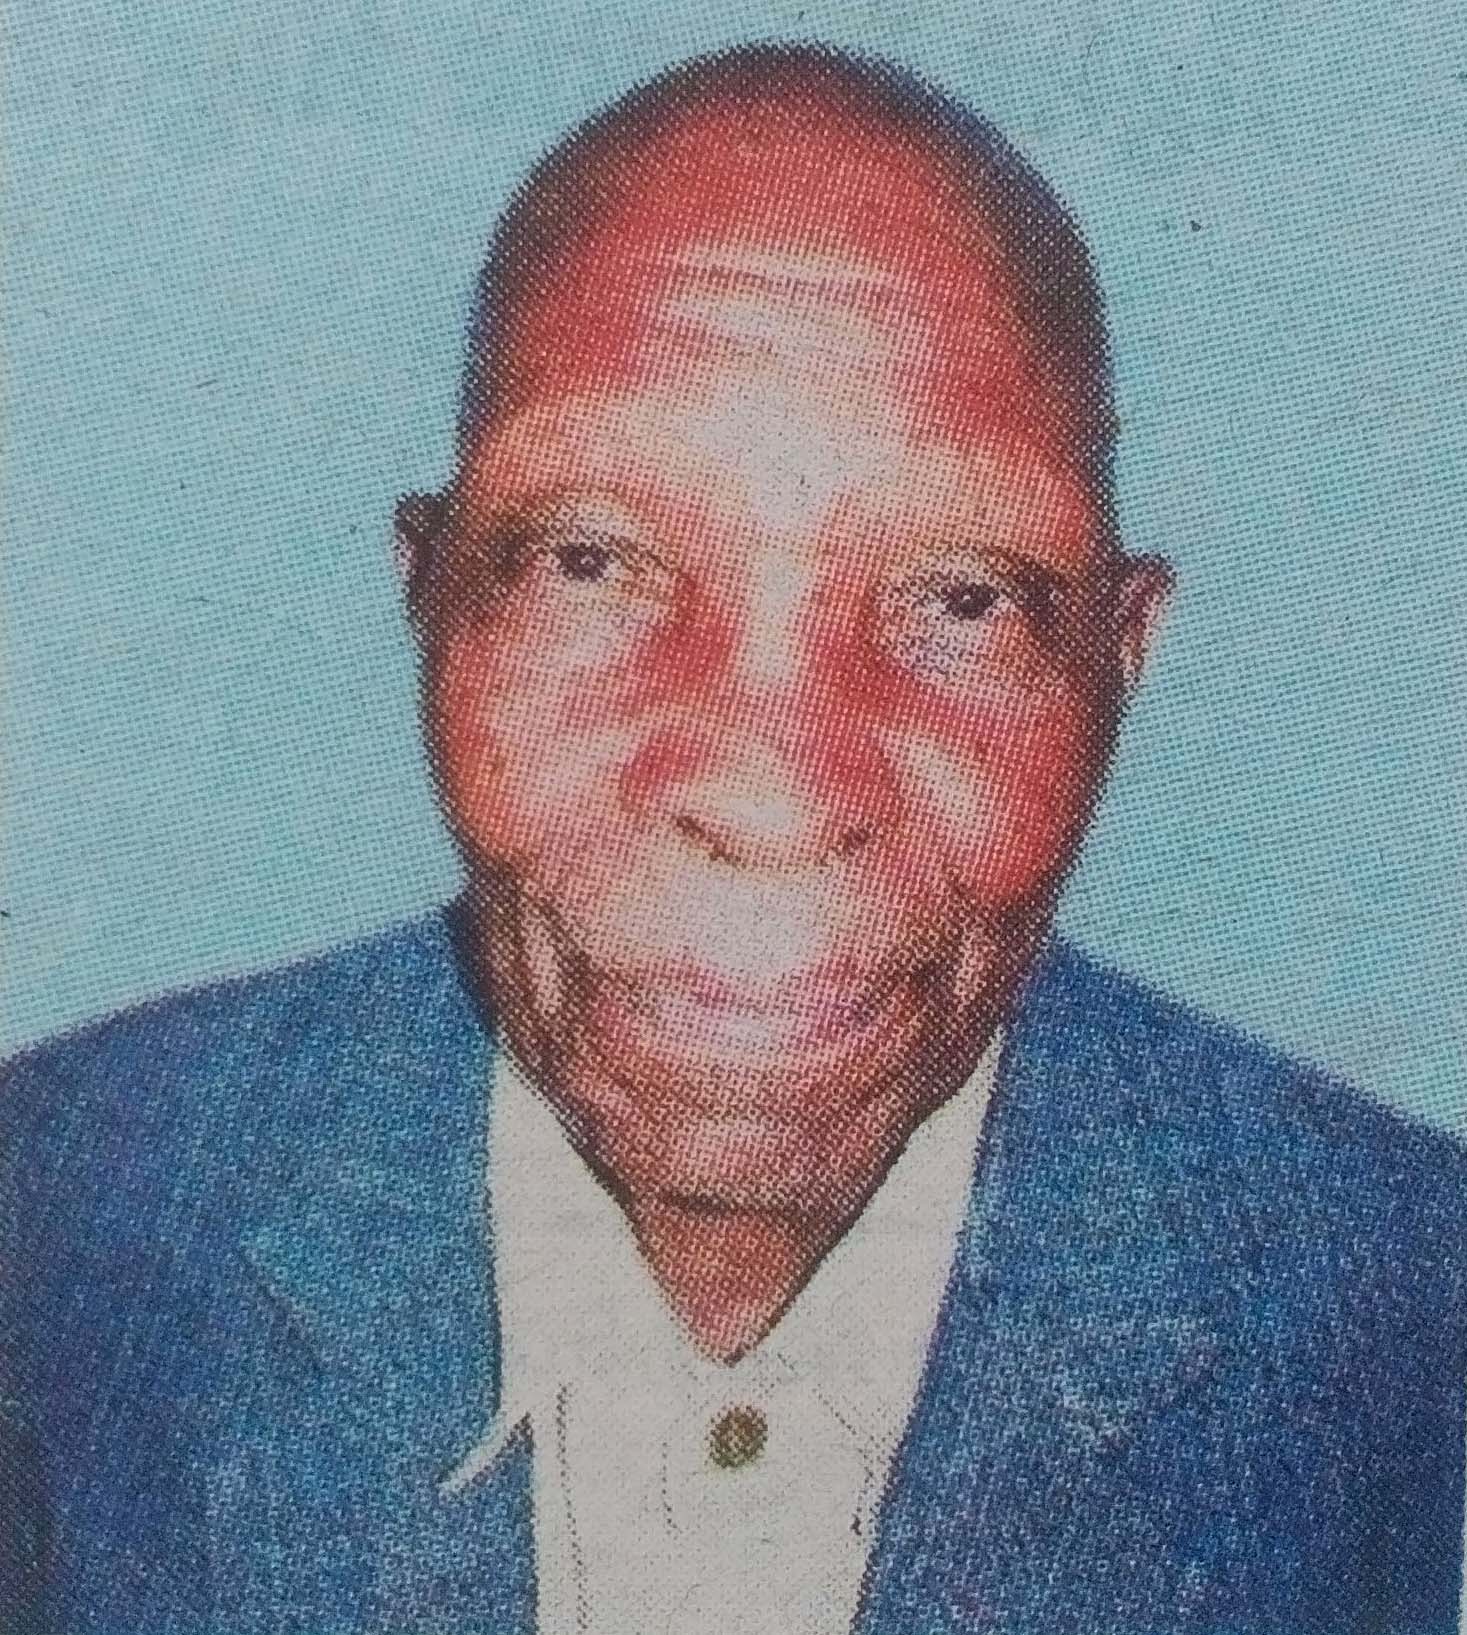 Obituary Image of Mwalimu Charles Kagwi Kinana